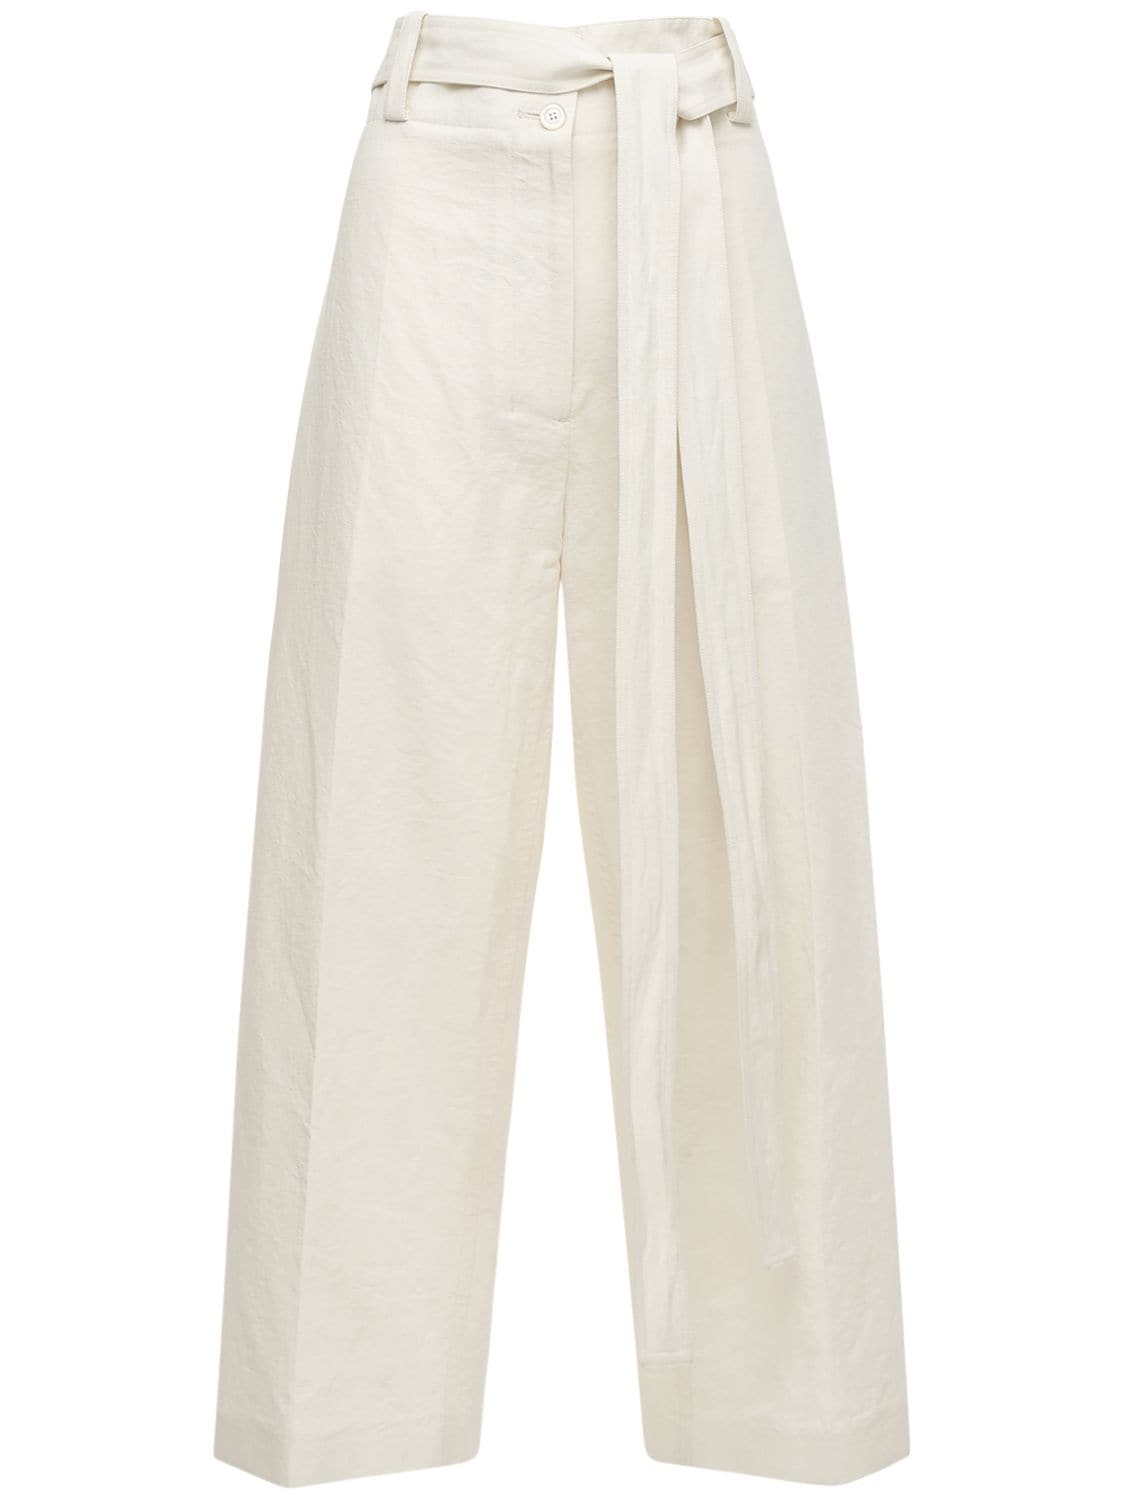 Moncler Genius High Waist Cotton & Linen Wide Pants In Beige